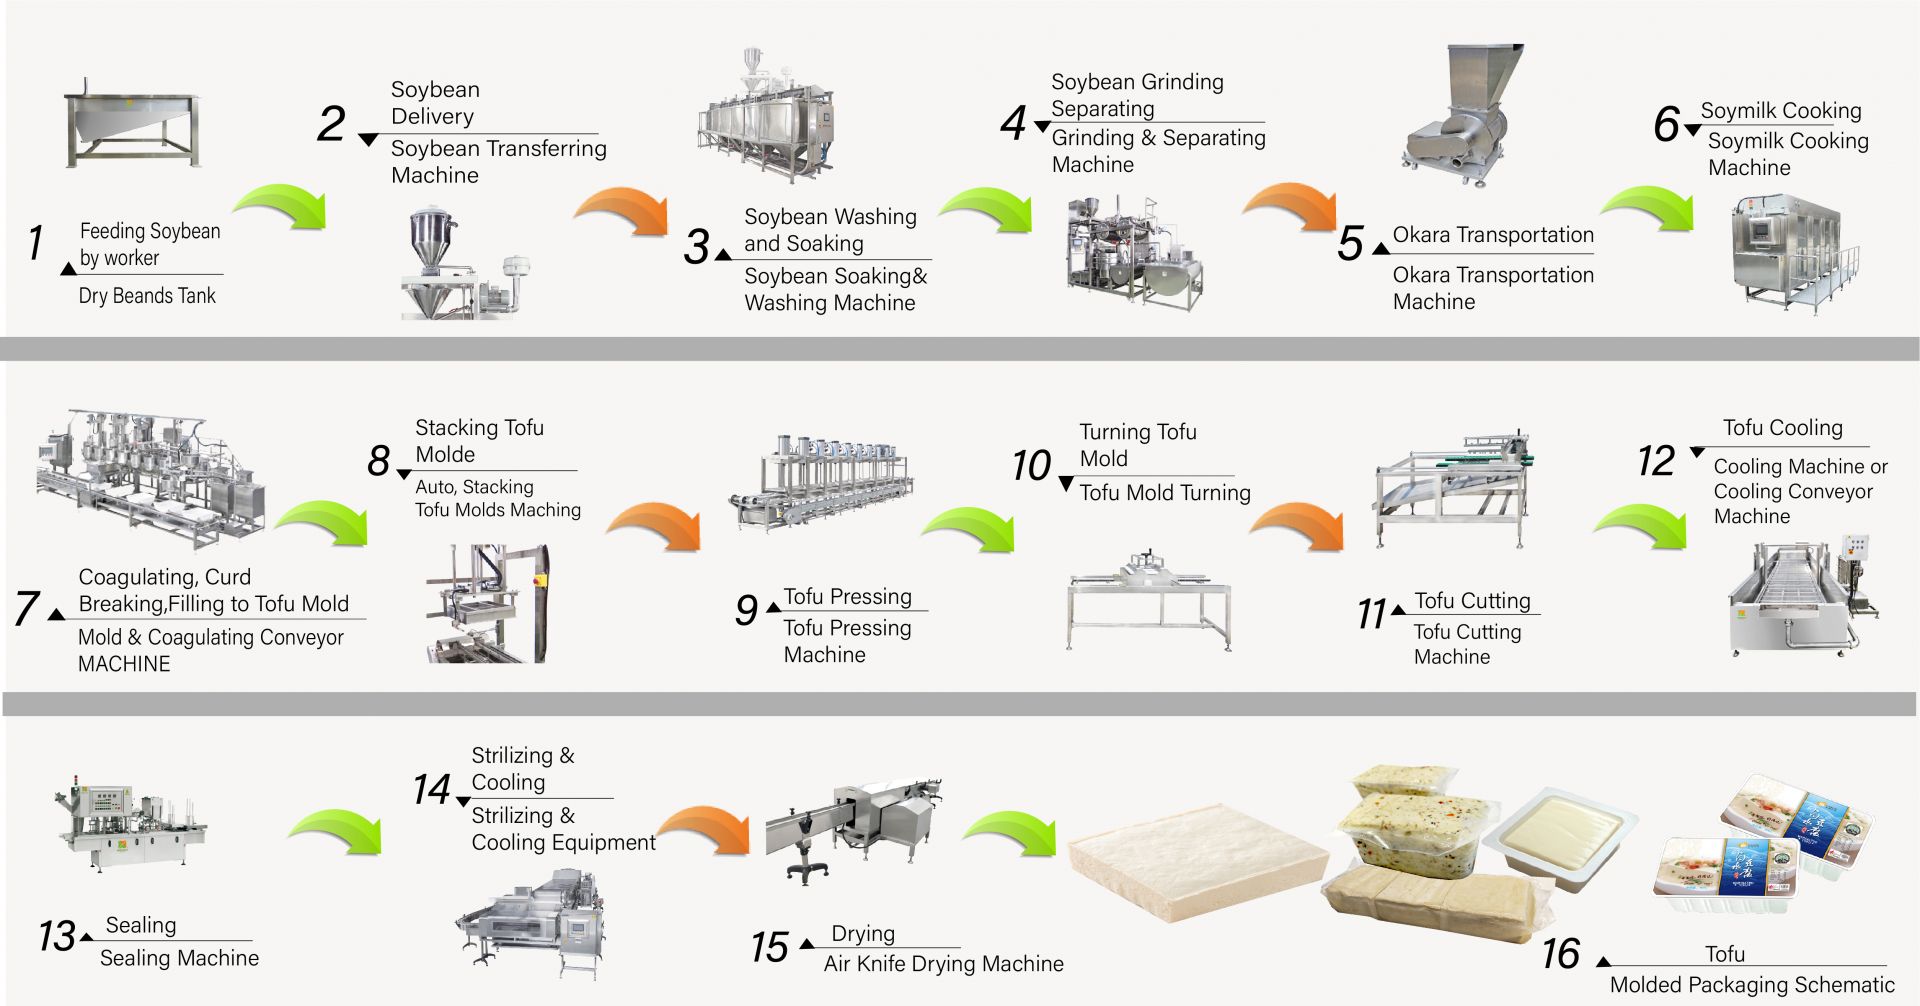 Tofu nasıl yapılır, tofu üretimi, tofu yapımı, tofu yapım süreci, tofu imalatı, tofu imalat süreci, tofu süreci, tofu işleme yöntemi, Tofu işleme süreci, tofu üretimi, tavuk üretim akış şeması, tofu üretim süreci, Tofu üretim süreci, otomatik tofu makinesi, Otomatik tofu yapma makinesi, Ticari tofu makinesi, Kolay Tofu Yapıcı, Kızarmış Tofu Makinesi, Endüstriyel tofu üretimi, Soya gıda ekipmanları, soya eti makinesi, soya sütü ve tofu yapma makinesi, tofu ekipmanı, tofu fabrikası, tofu makinesi, satılık tofu makinesi, tofu makinesi üreticisi, tofu makinesi imalatçısı, tofu makinesi fiyatı, Tofu makinaları, Tofu makineleri ve ekipmanları, Tofu Yapıcı, tofu yapma makinesi, Tofu yapımı, tofu yapım ekipmanları, tofu yapma makinesi, tofu yapma makinesi fiyatı, tofu üreticileri, Tofu üretimi, tofu üretim ekipmanları, Tofu üretim fabrikası, tofu üretim tesisi, Tofu üretim ekipmanları, Tofu üretim fabrikası, tofu üretim hattı, Tofu üretim hattı fiyatı, tofu yapma makinesi, Vegan Et Makinesi, Vegan Et Üretim Hattı, Sebze tofu makine ve ekipmanları